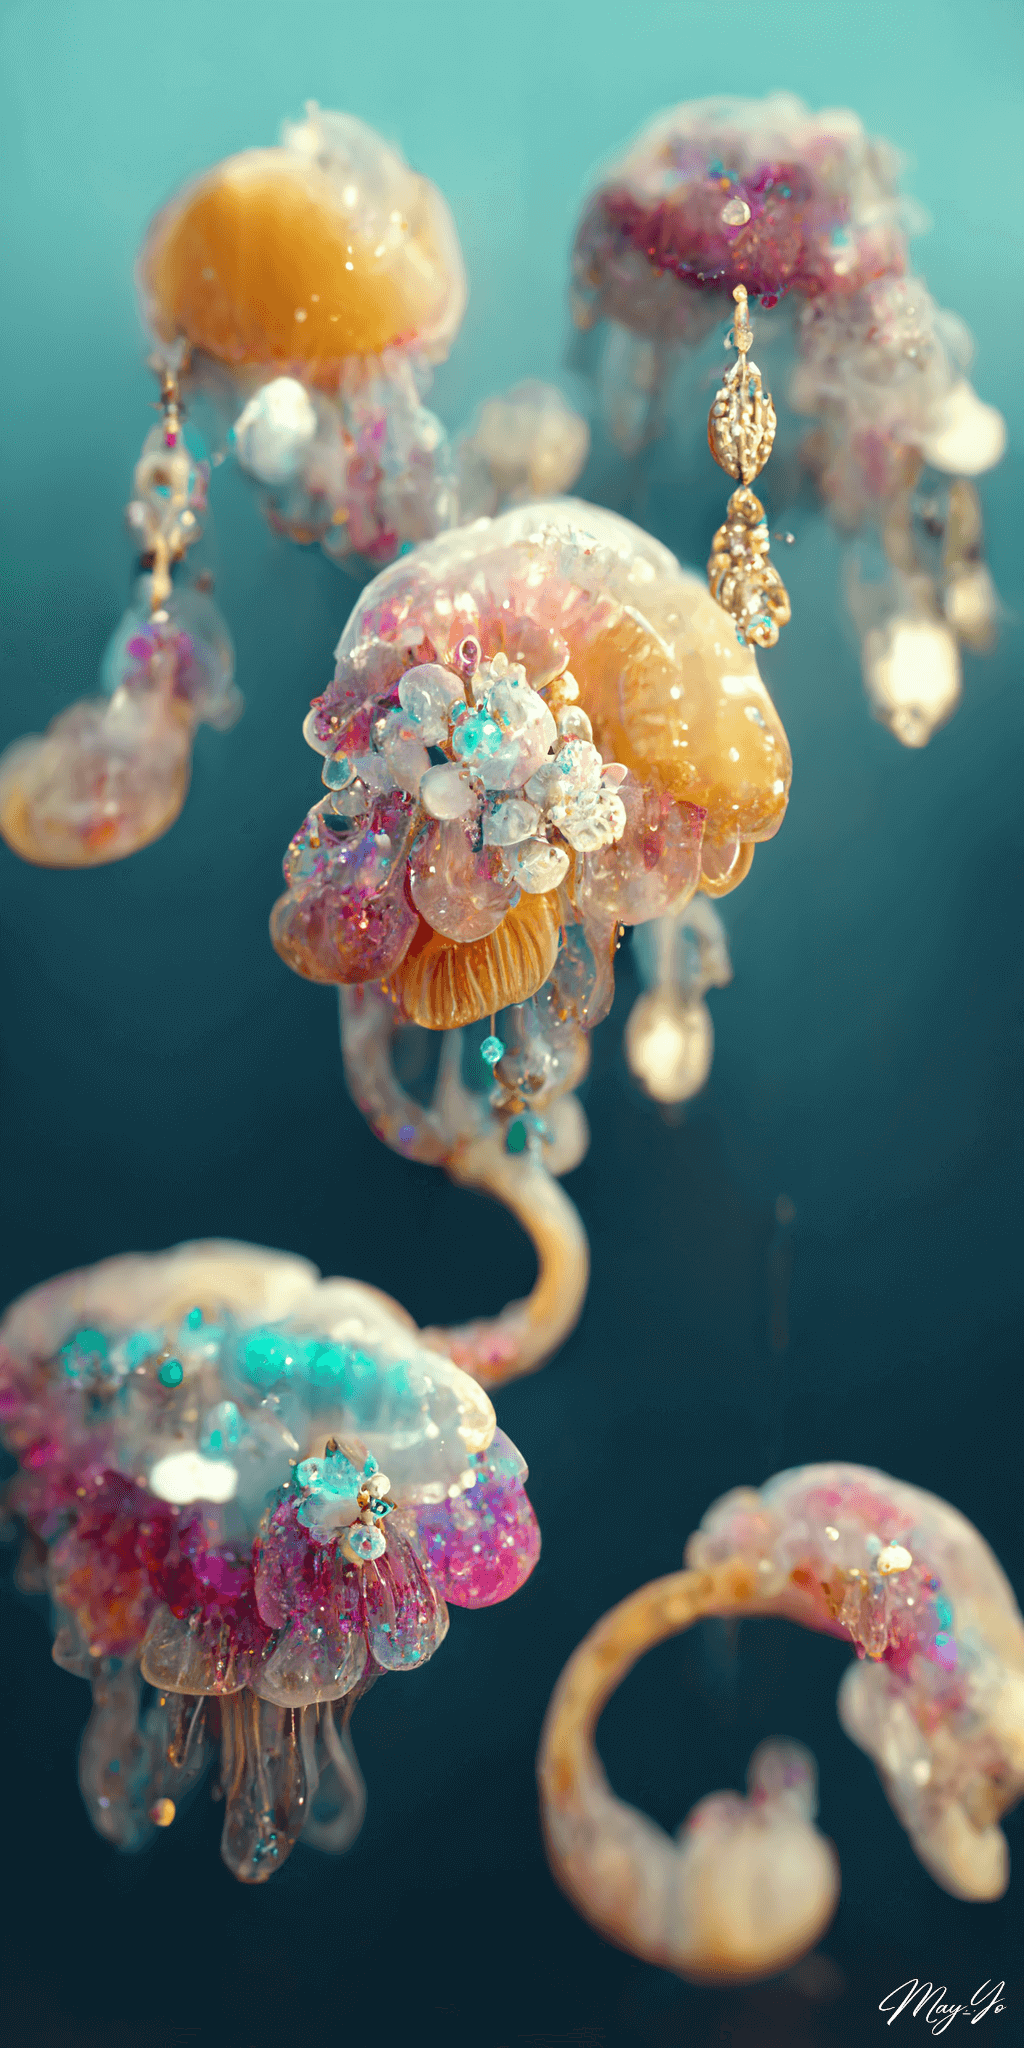 宝石でできたクラゲのイラスト待受 オパールカラー 白 黄色 ピンク 水色 幻想的な海の生き物のジュエリー AIイラスト壁紙 縦長画像 jellyfish jewerly illustration luxery romantic